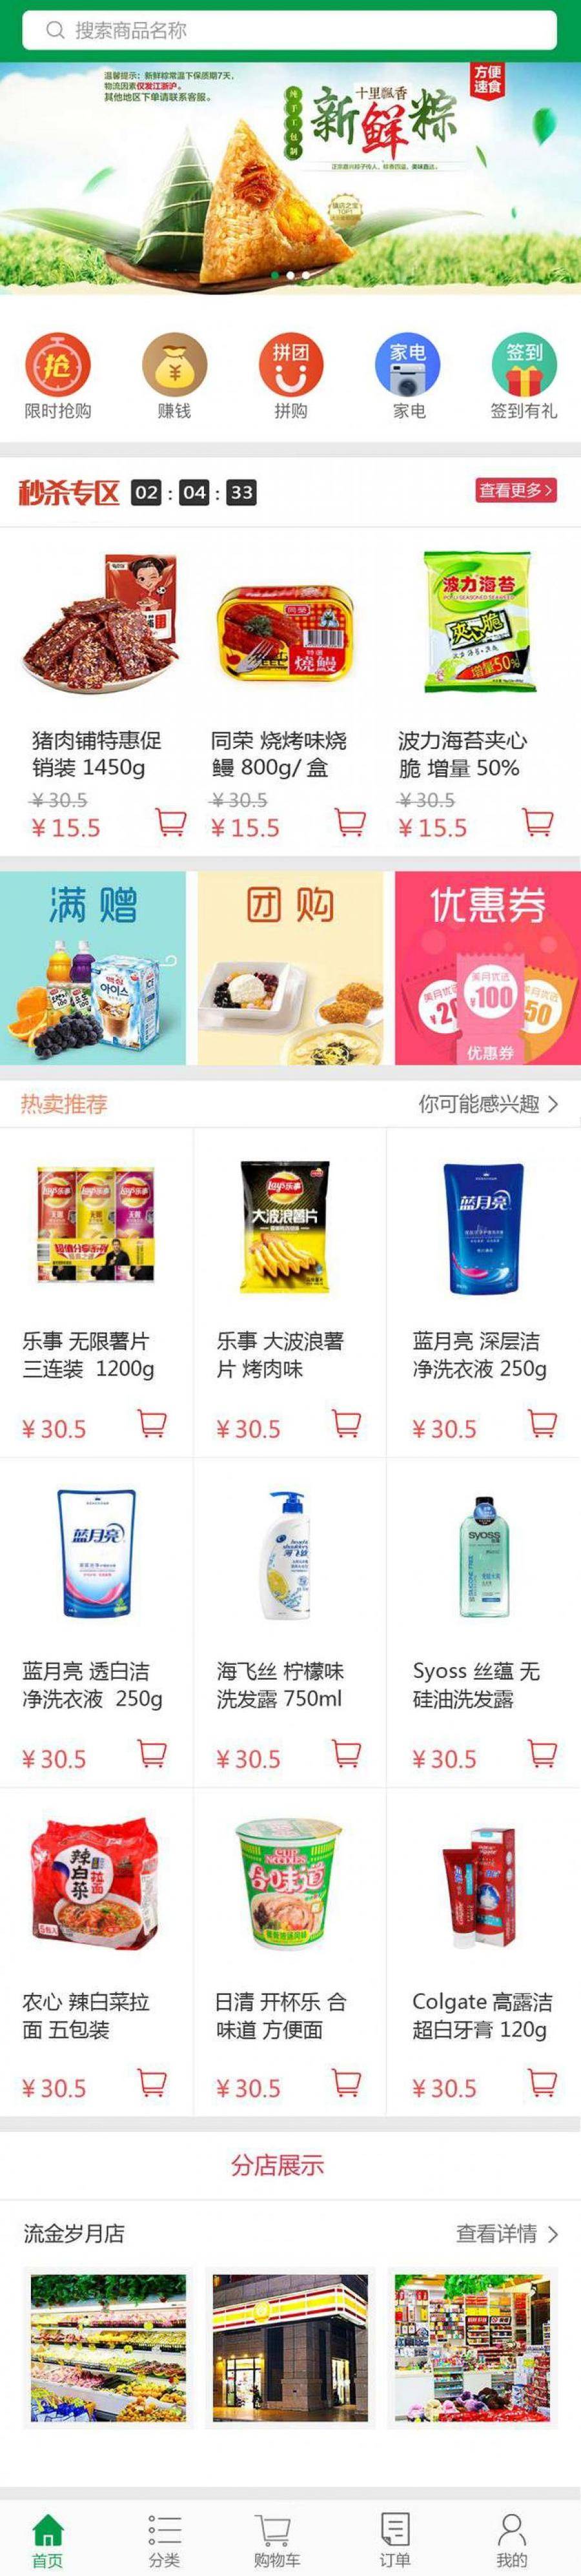 乐鑫购物超市_多用途移动端App首页模板封面图